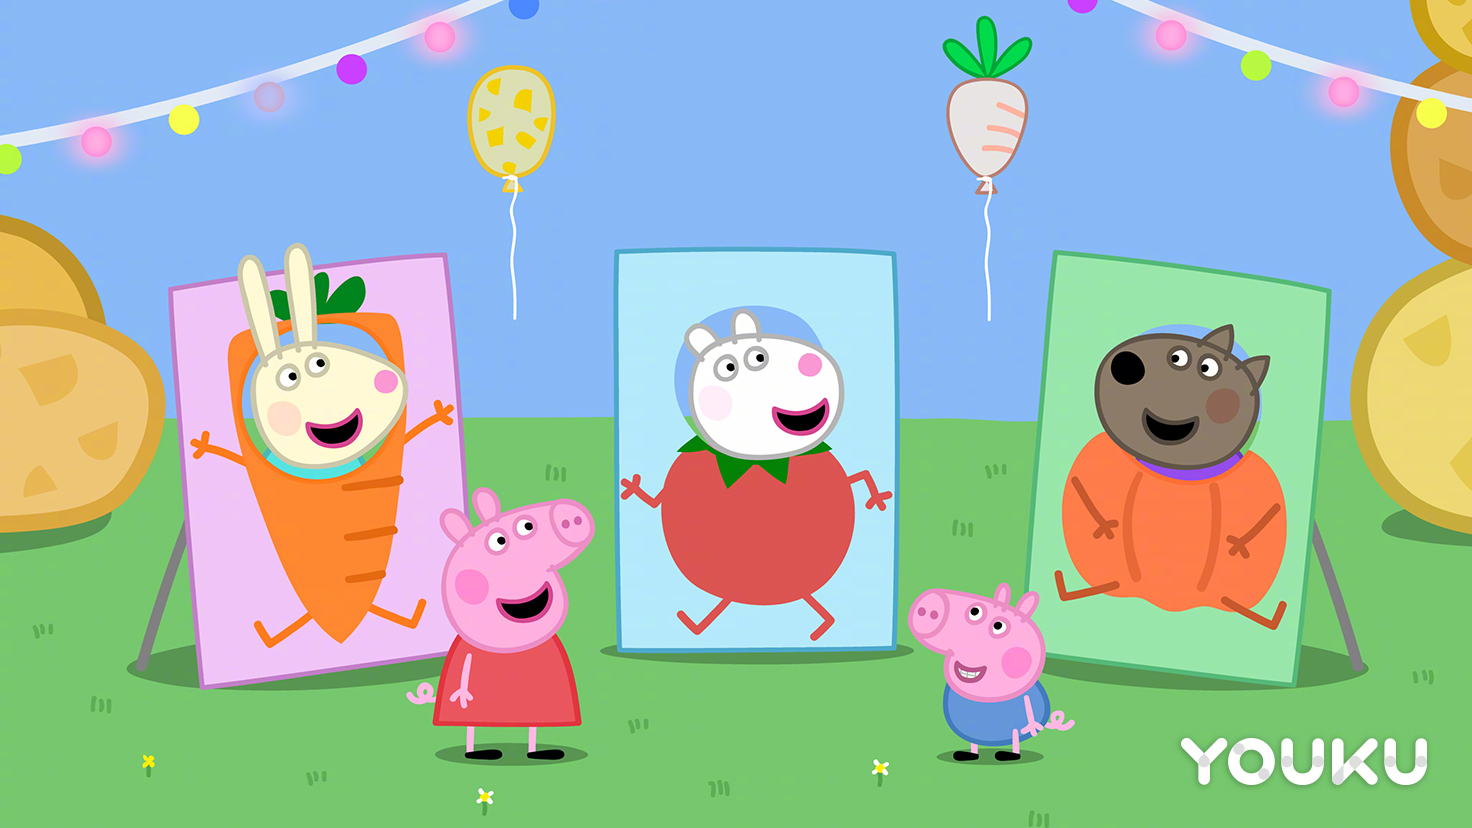 撒花庆祝 小朋友们最喜欢的动画片《小猪佩奇》第五季今天开始在优酷